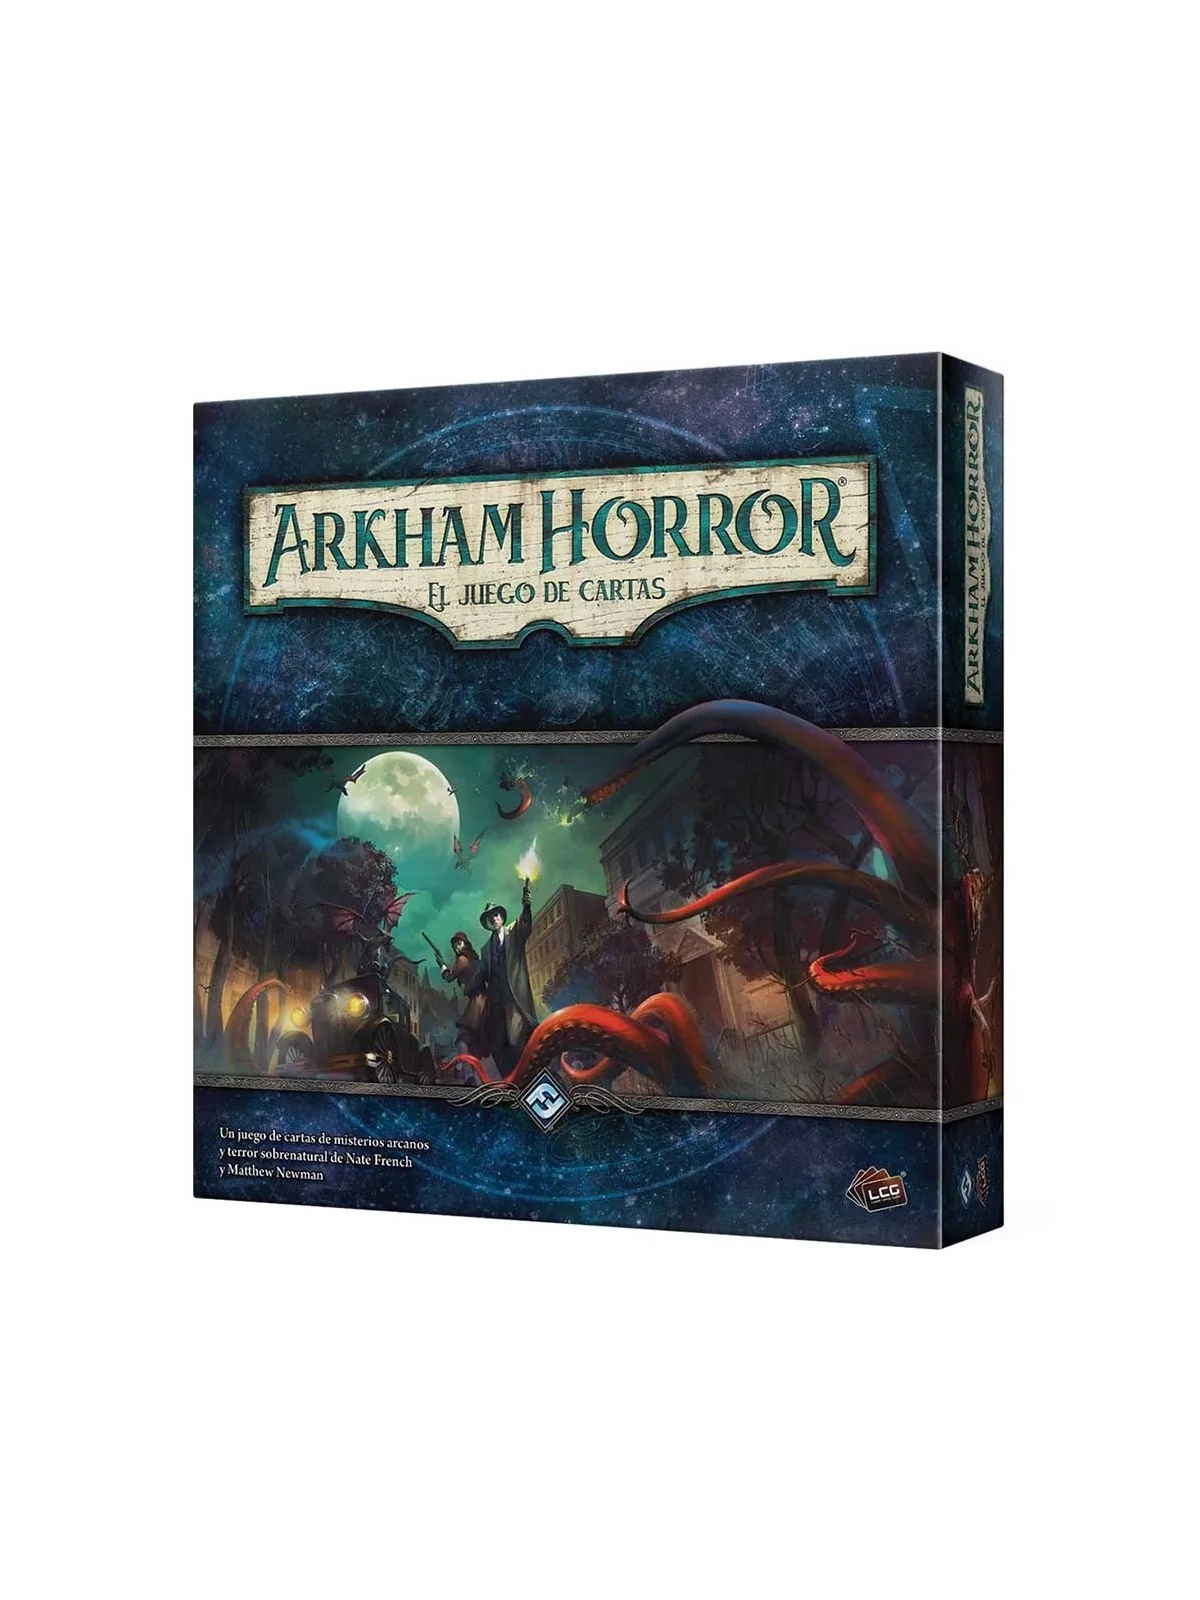 Comprar Arkham Horror: El Juego de Cartas barato al mejor precio 40,49